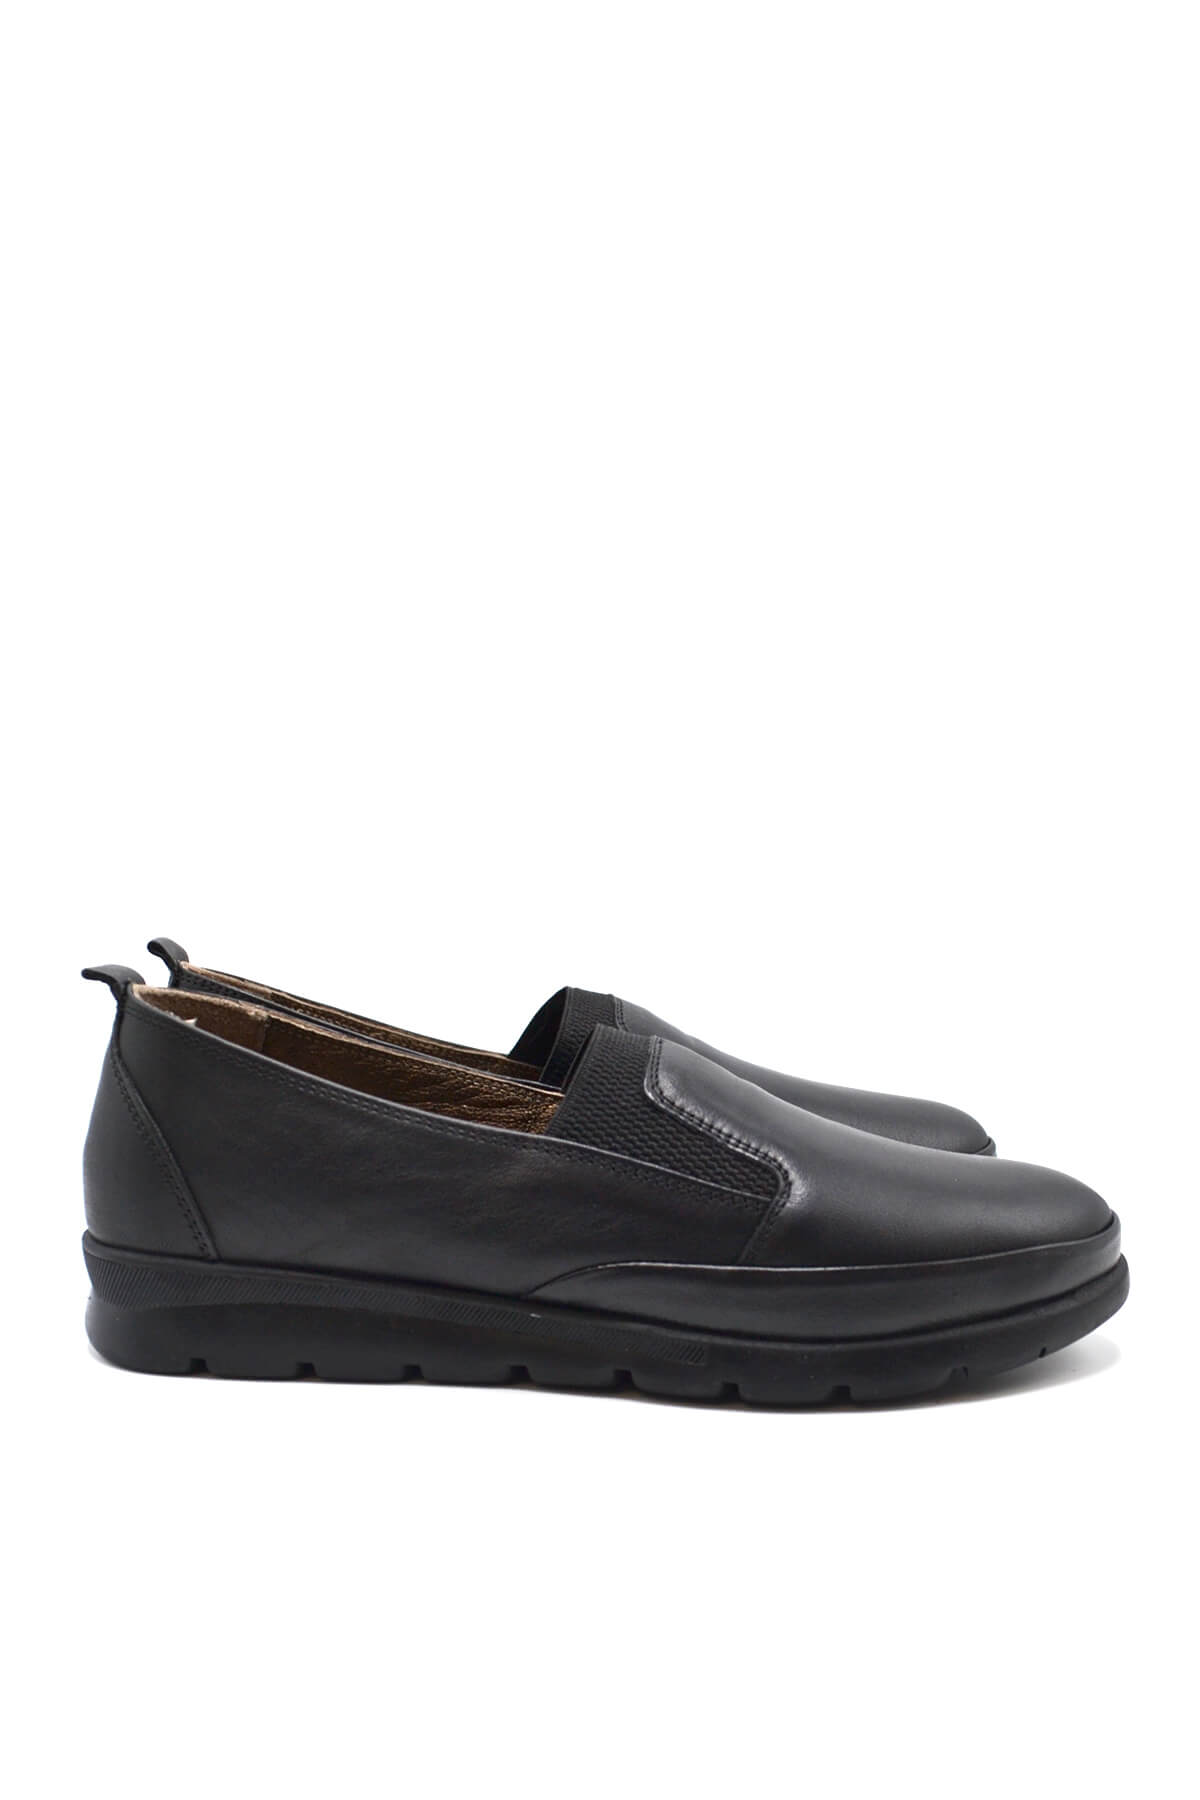 Kadın Comfort Deri Ayakkabı Siyah 2224709K - Thumbnail